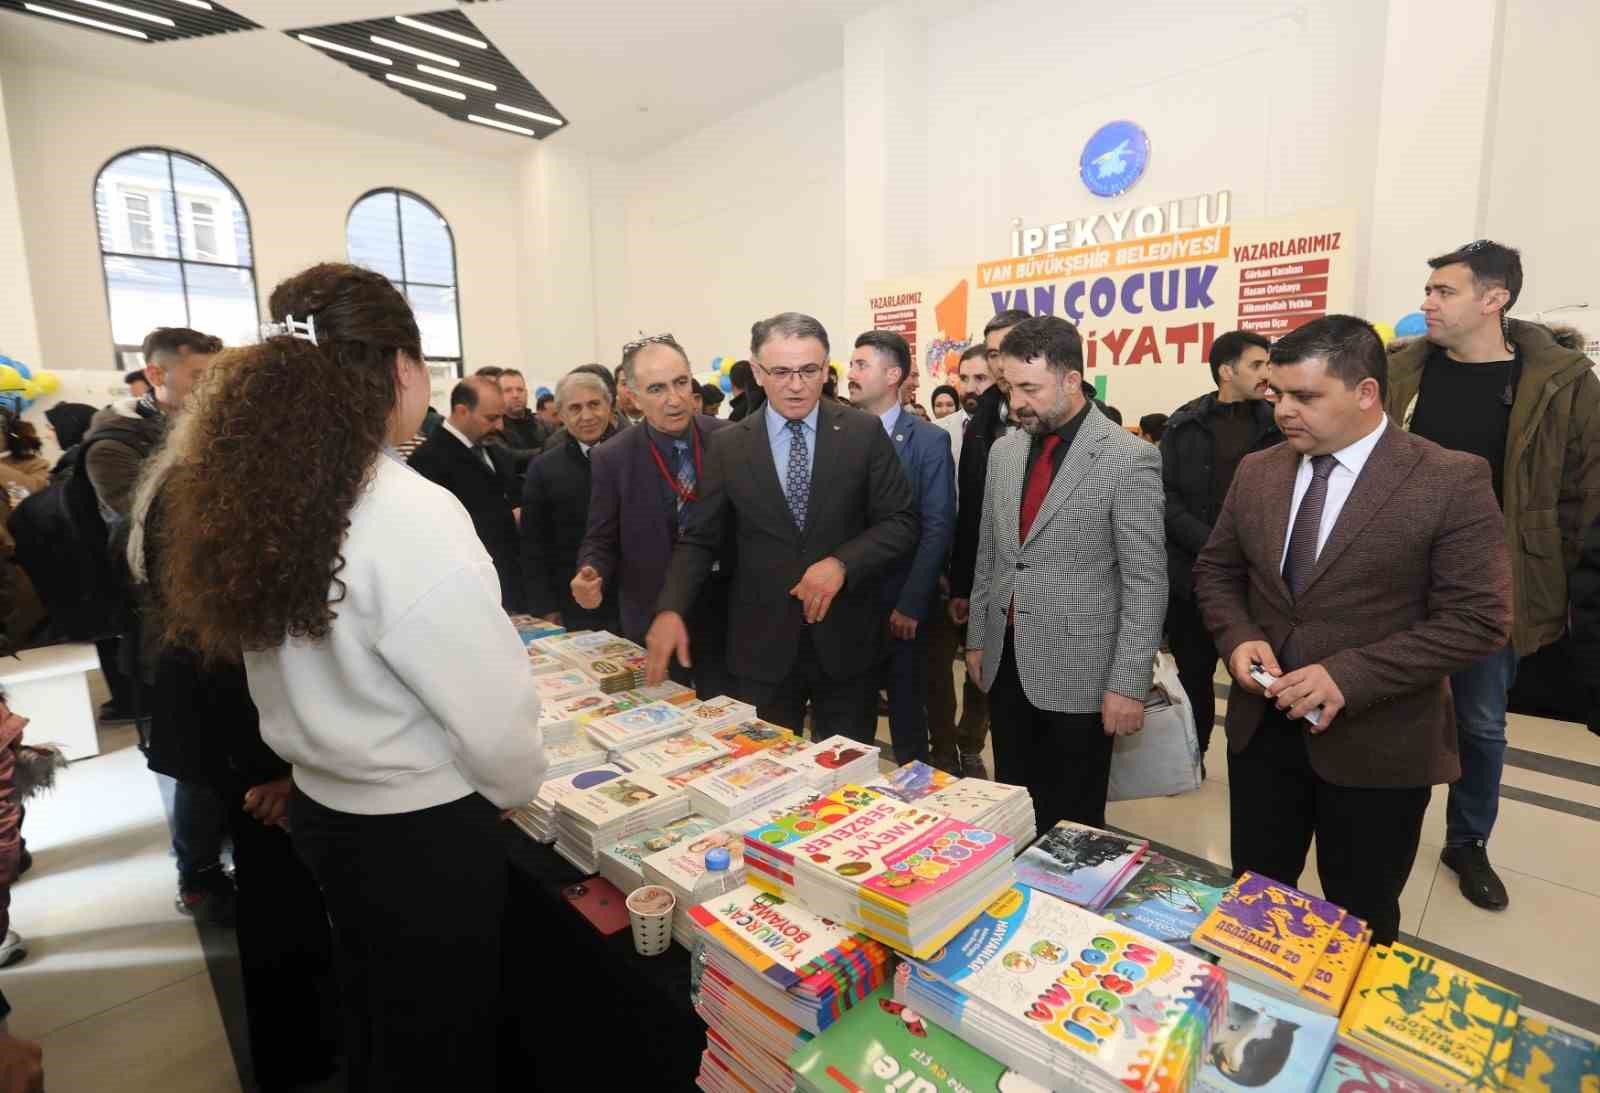 1. Van Çocuk Edebiyatı Fuarı açıldı